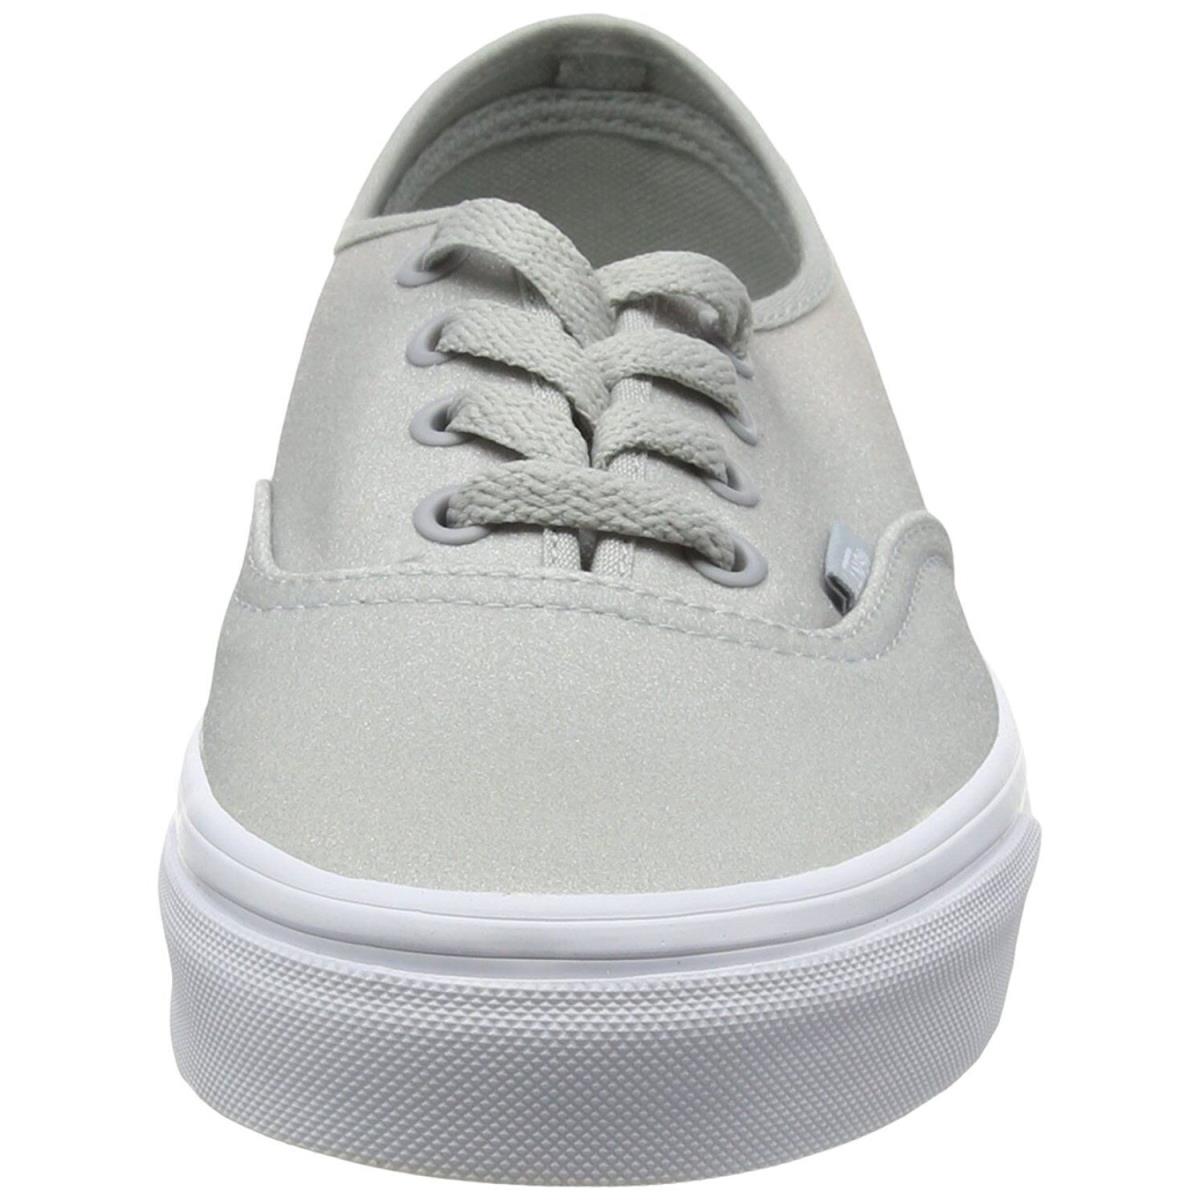 Vans shoes  - White 0